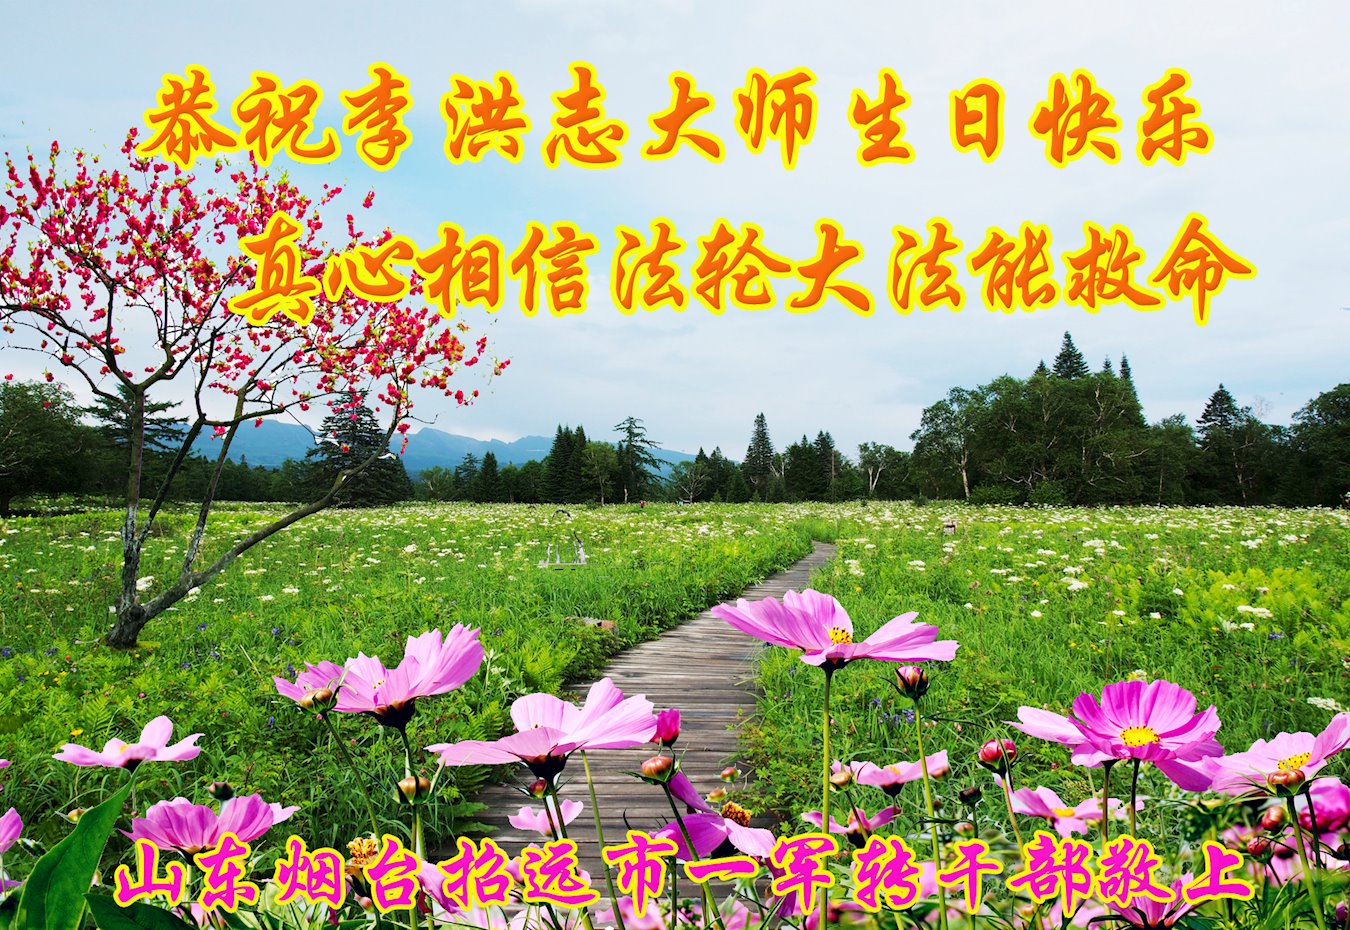 Image for article Les sympathisants de Falun Dafa à Yantai, dans la province du Shandong, souhaitent un joyeux anniversaire à Maître Li